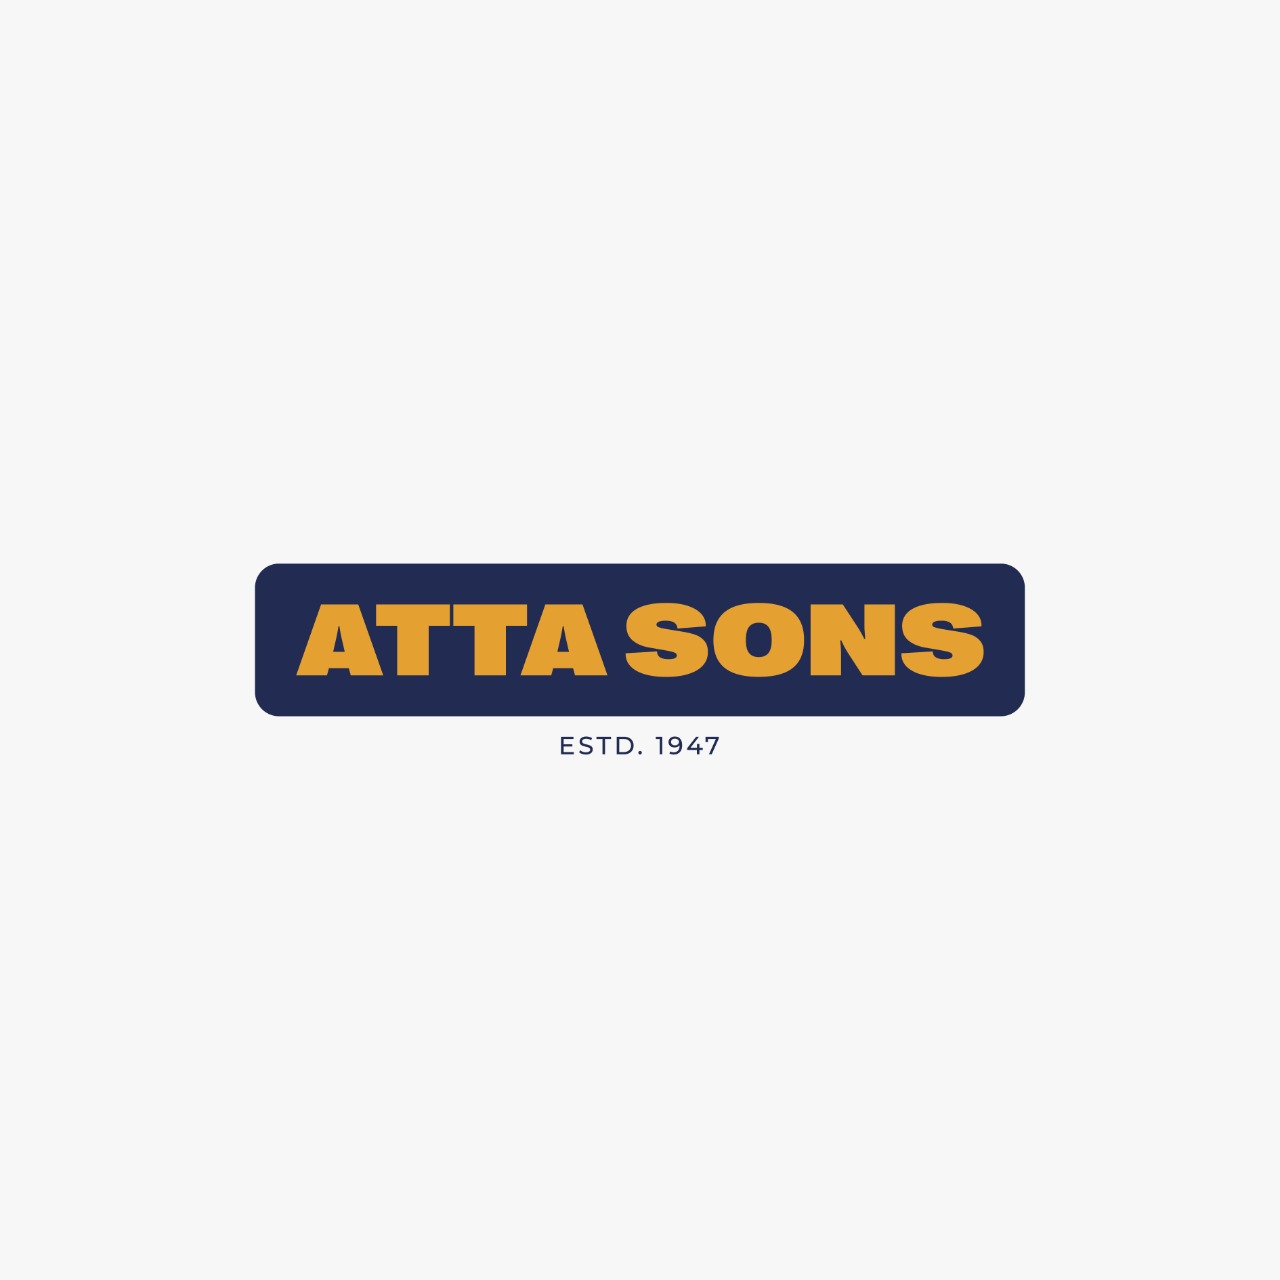 Atta Sons Company